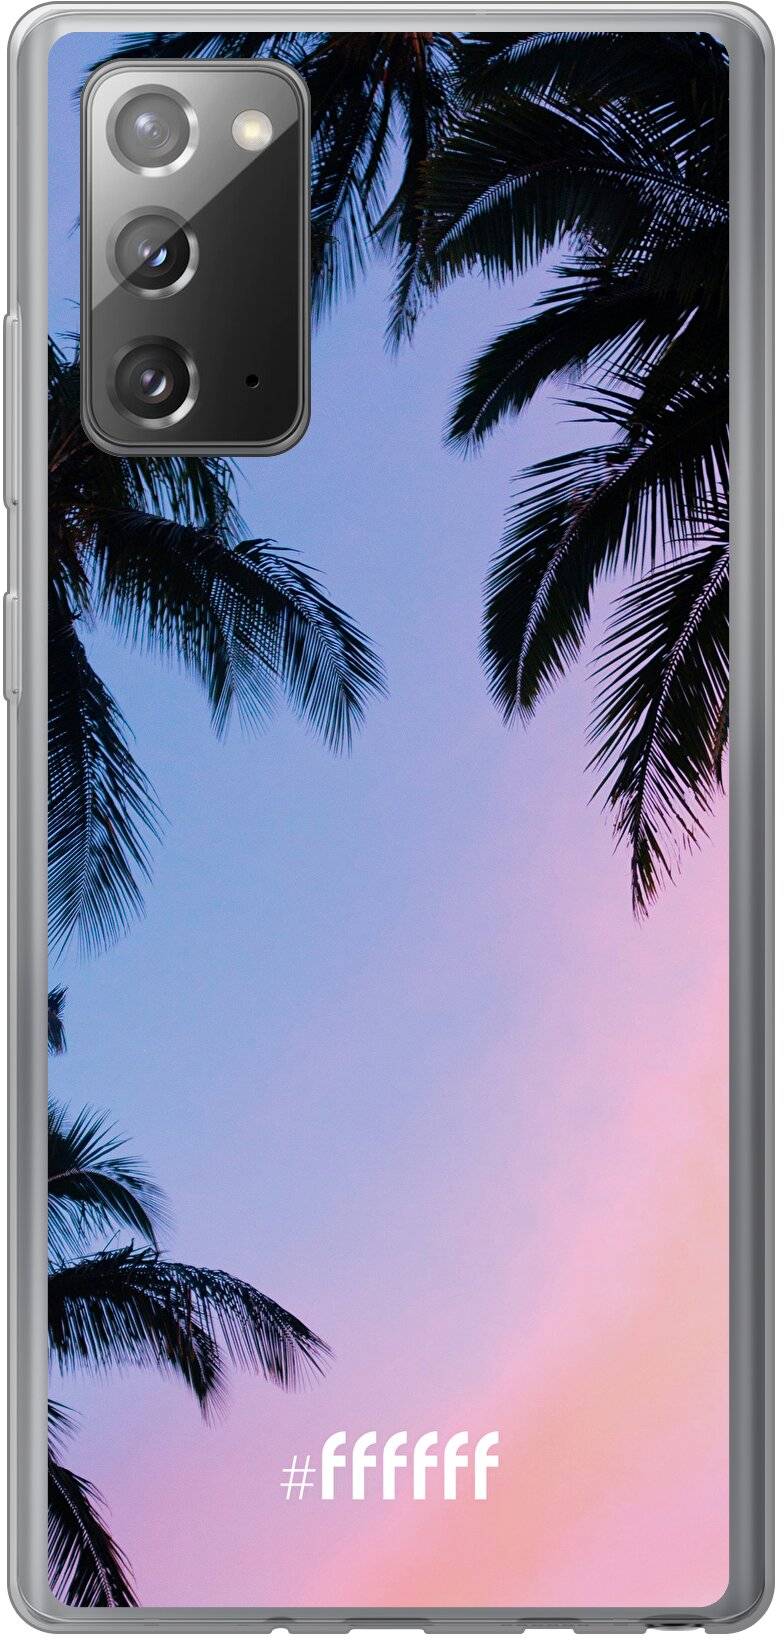 Sunset Palms Galaxy Note 20